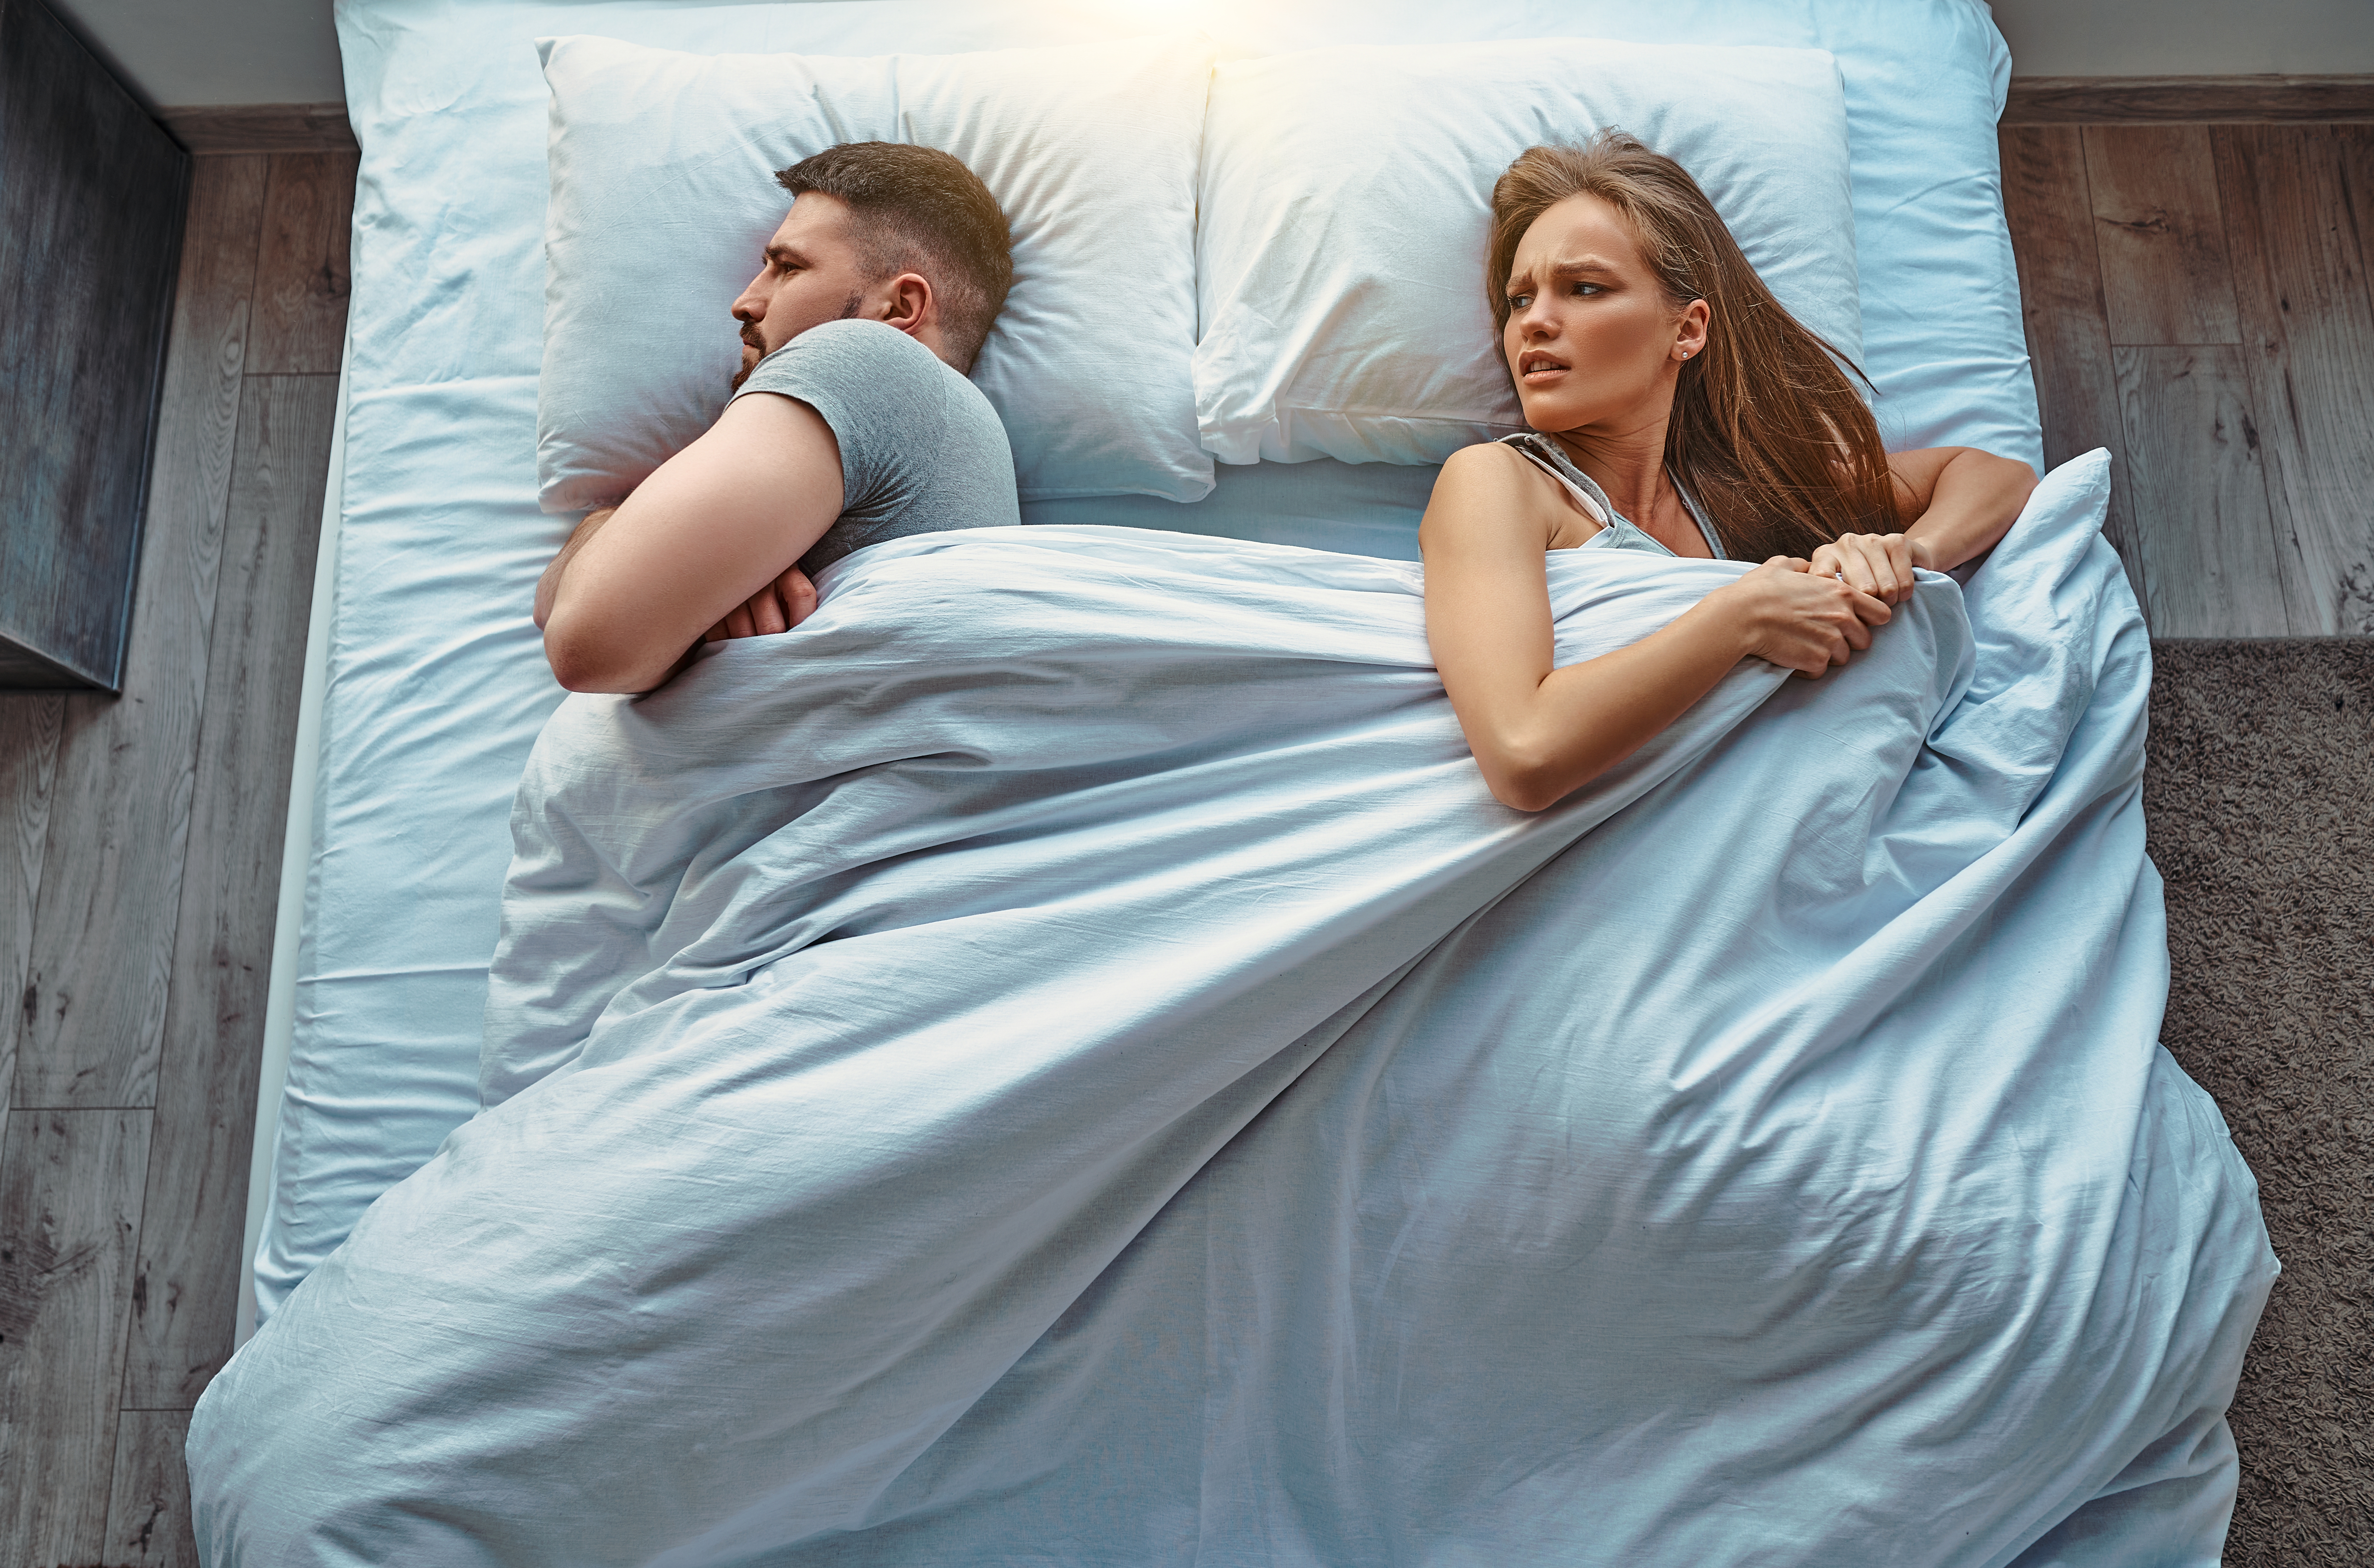 Homme et femme se disputant au lit | Source : Shutterstock